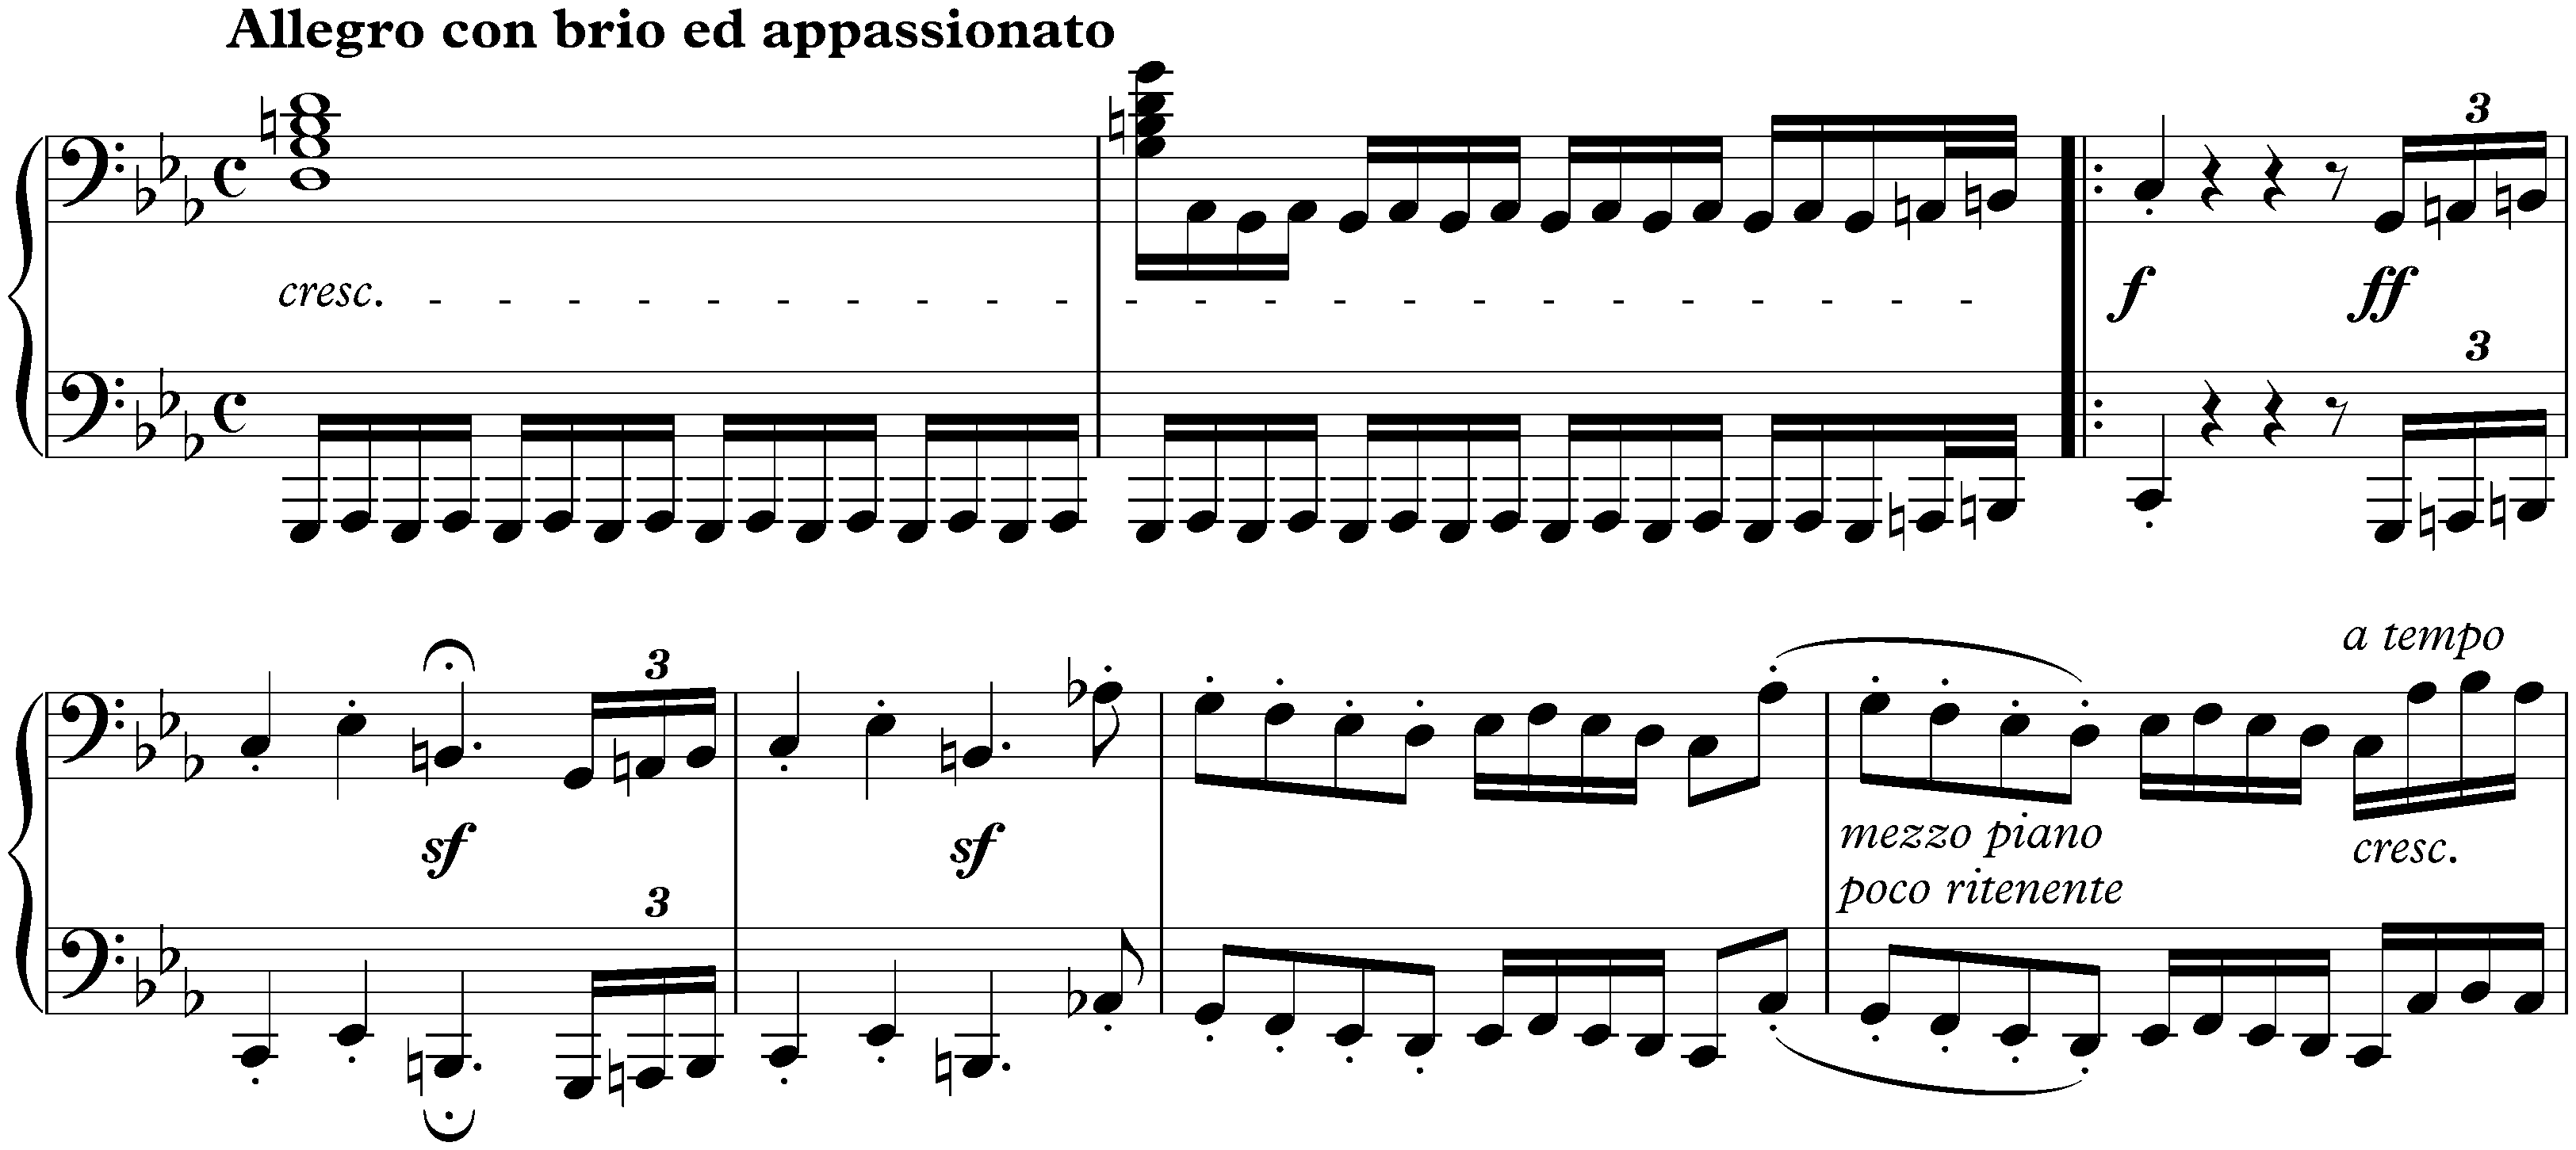 Sonata no. 32 in C minor, op. 111; 1. Maestoso – Allegro con brio ed appassionato